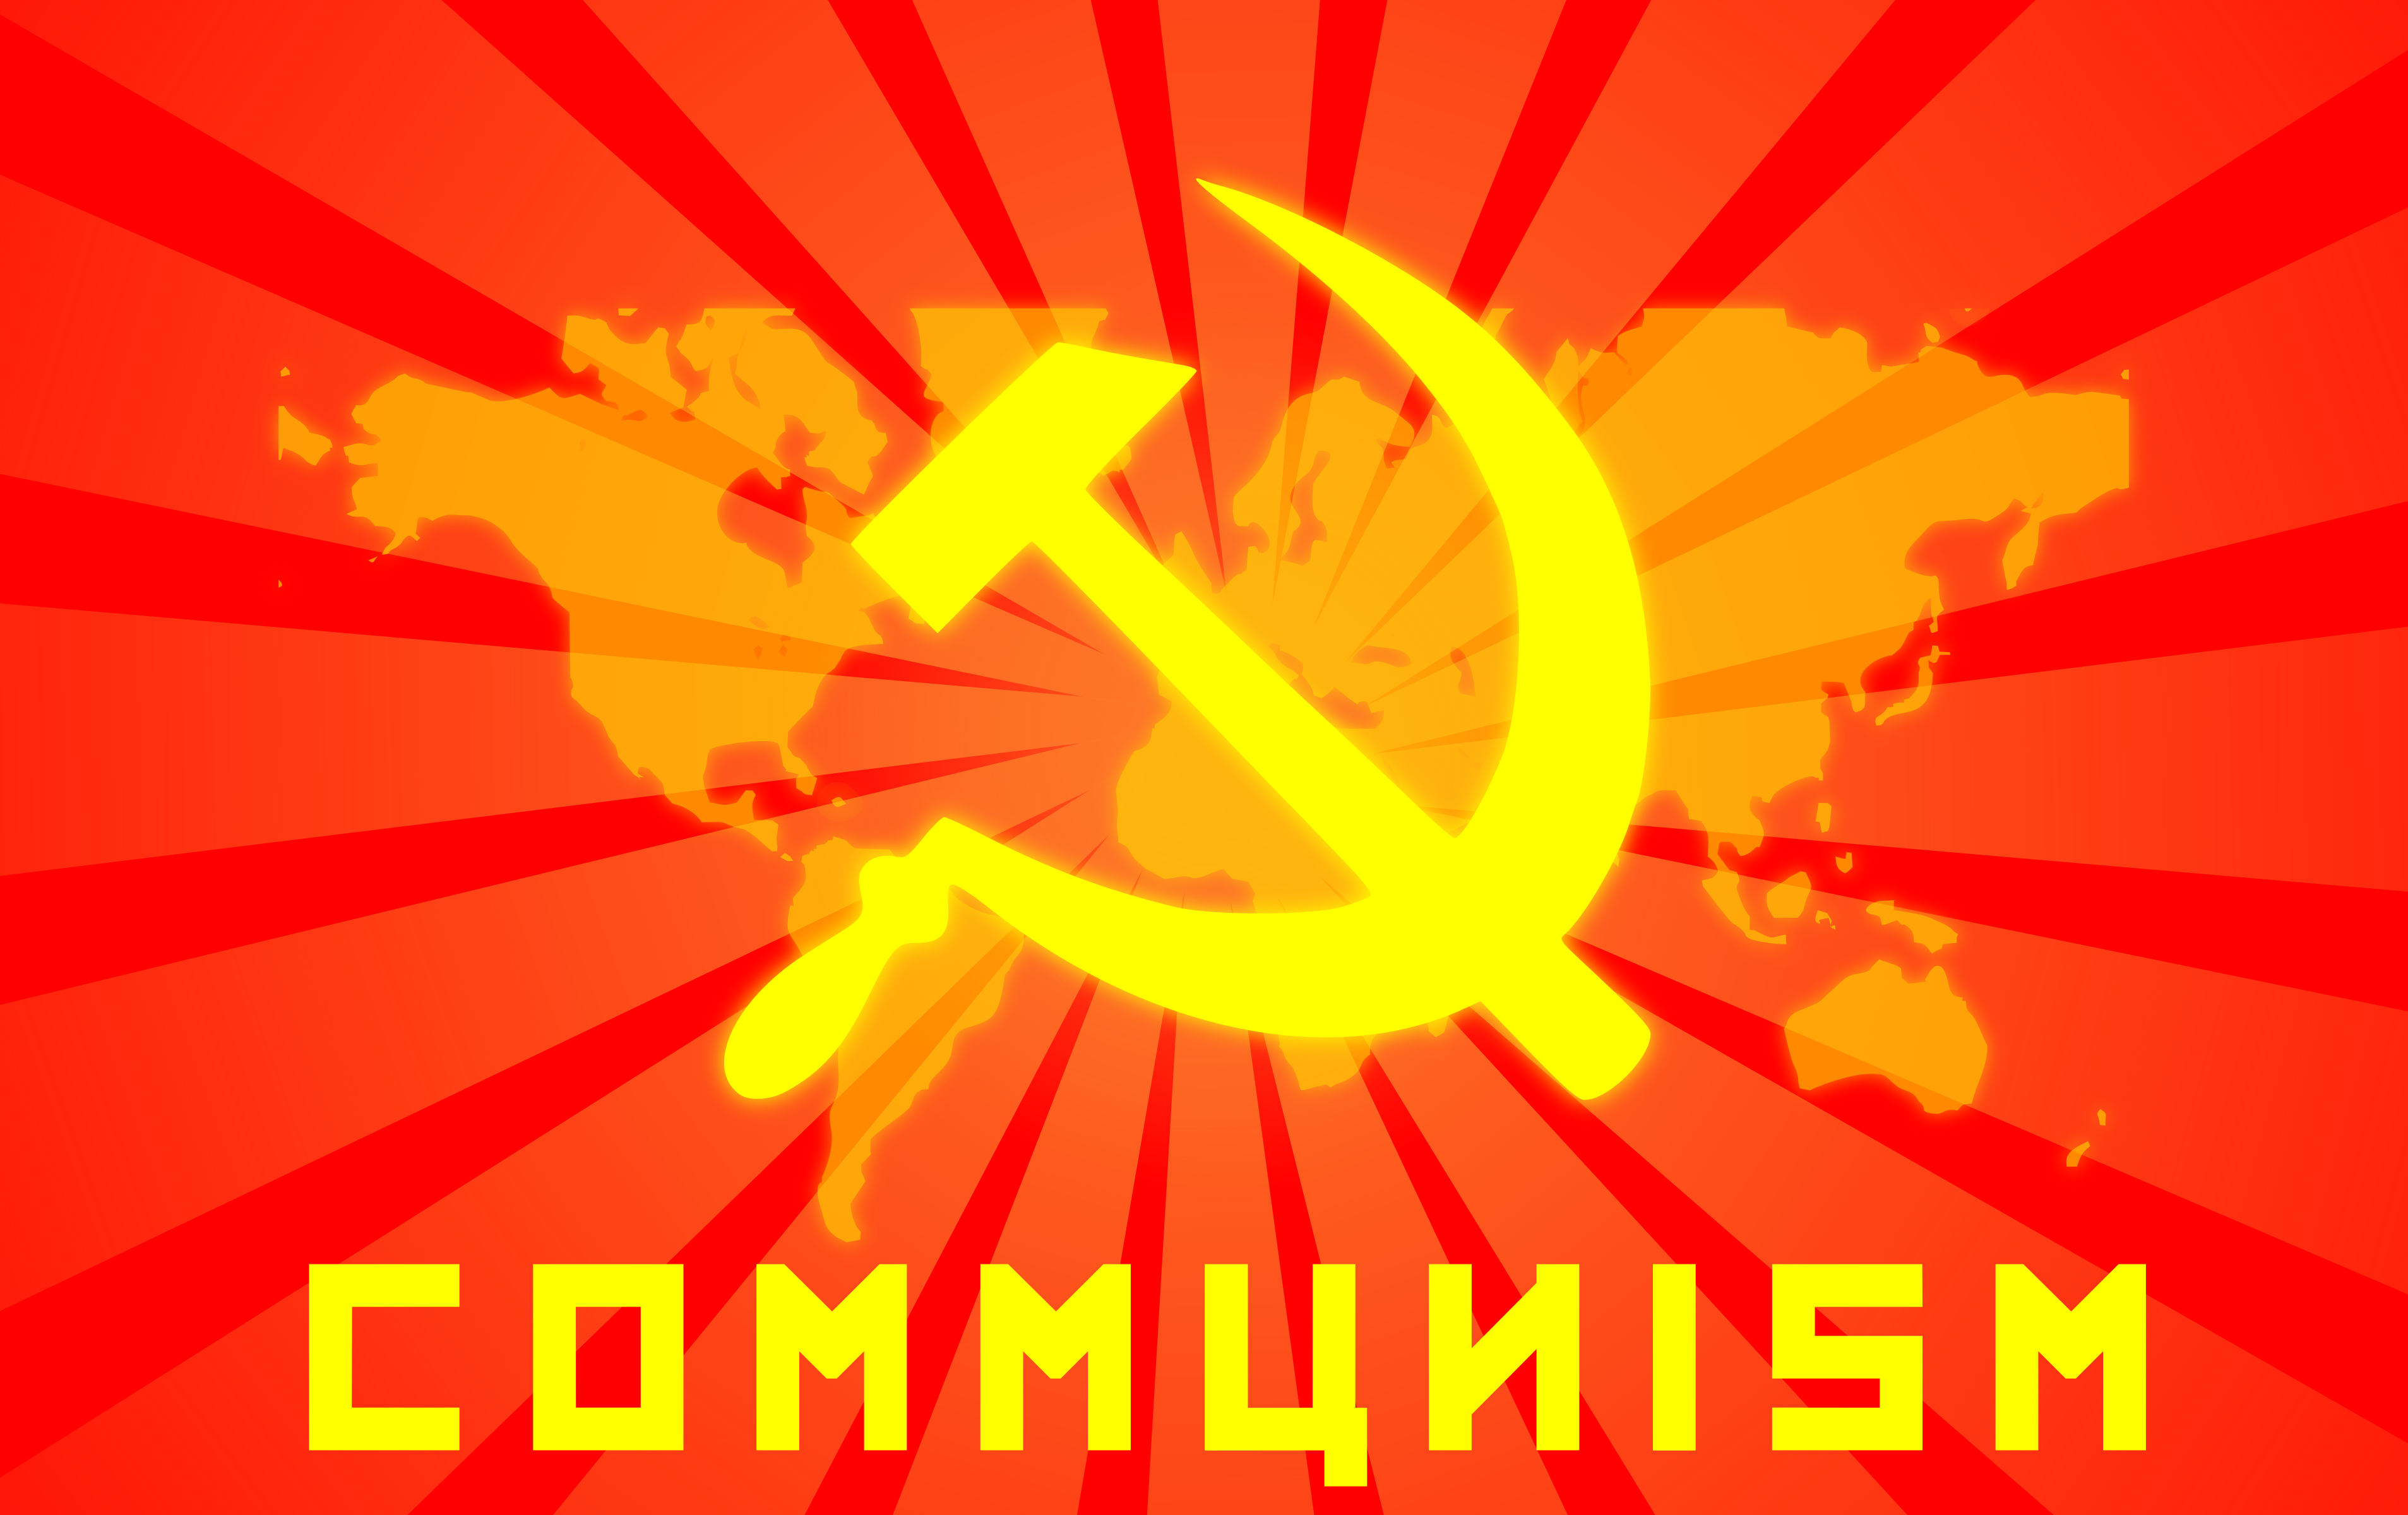 Communism Backgrounds, Compatible - PC, Mobile, Gadgets| 3814x2400 px